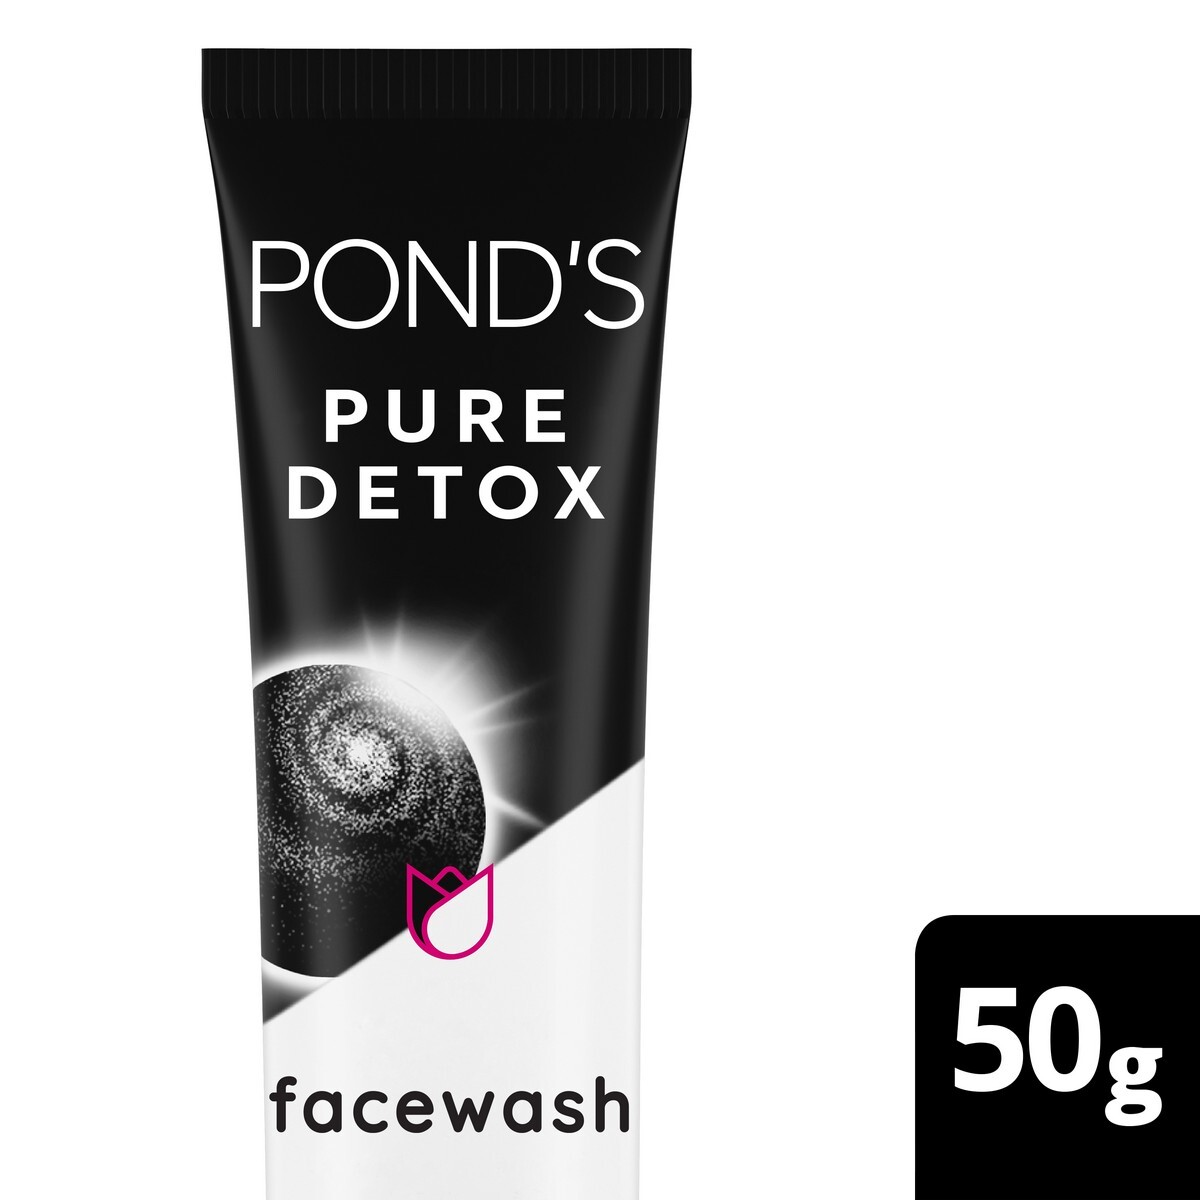 Ponds Pure Detox Face Wash, 50G